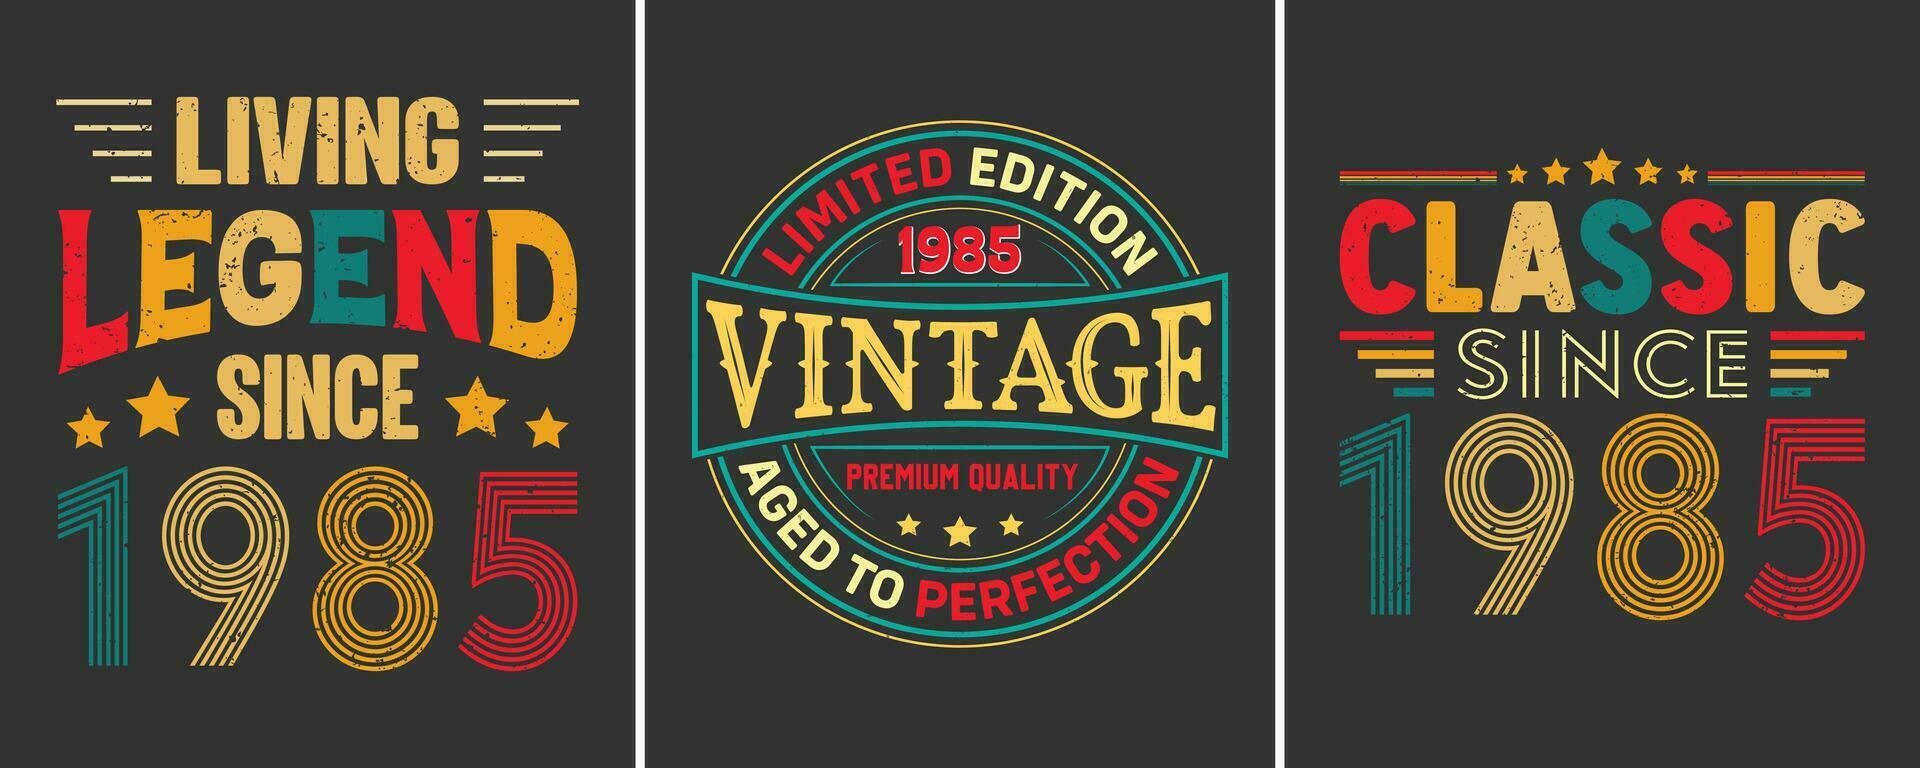 vivo leyenda ya que 1985, limitado edición 1985 Clásico prima calidad Envejecido a perfección, clásico ya que 1985 limitado edición, camiseta diseño para cumpleaños regalo vector